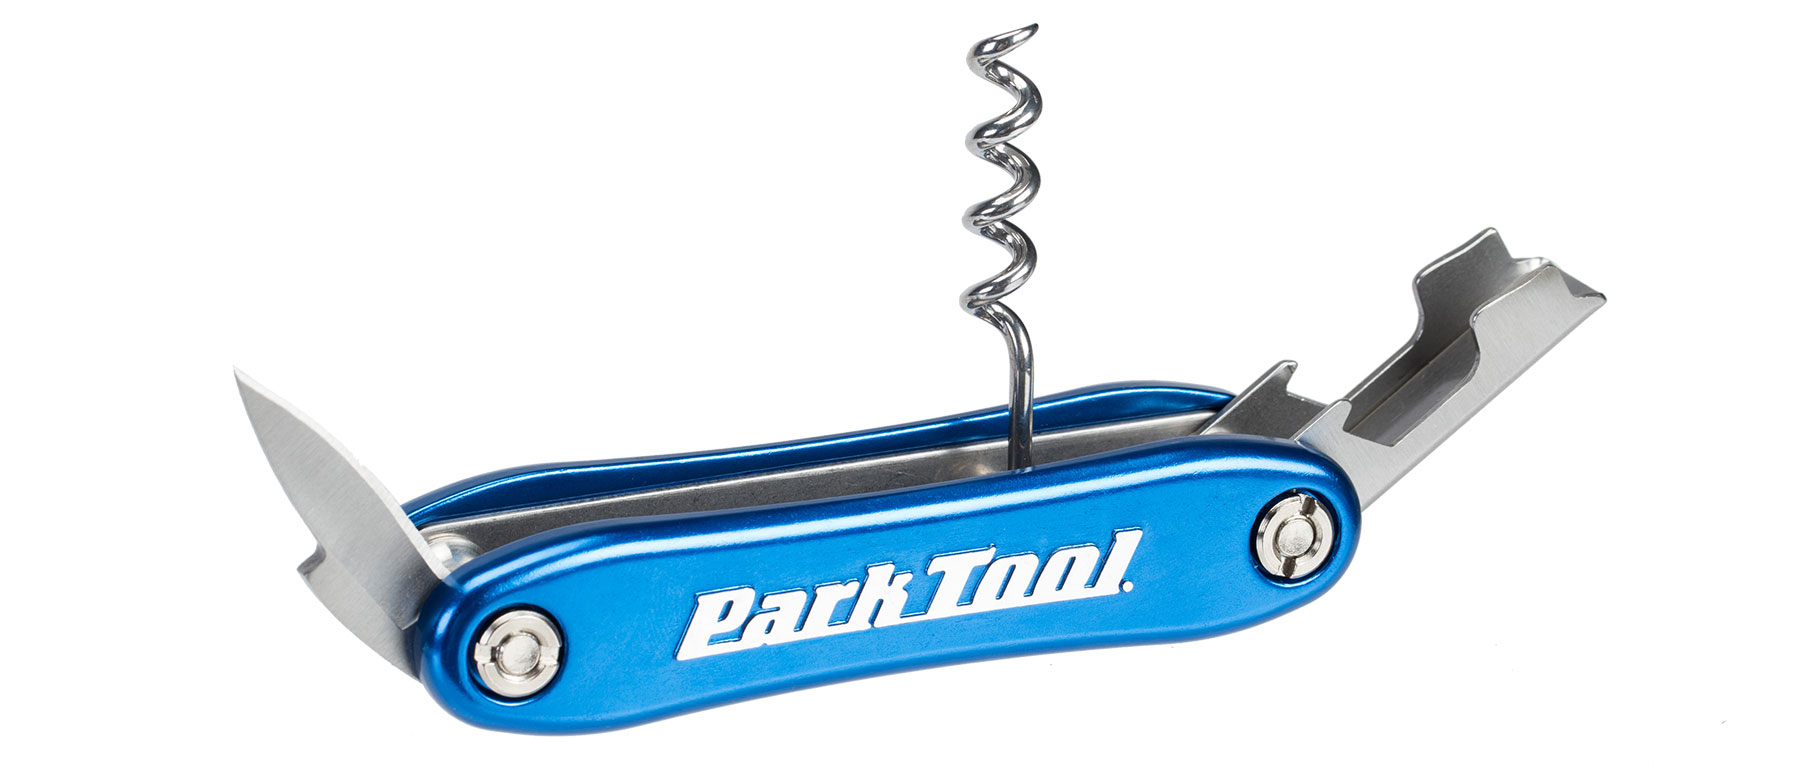 Park Tool BO-4 Corkscrew and Bottle Opener Tool